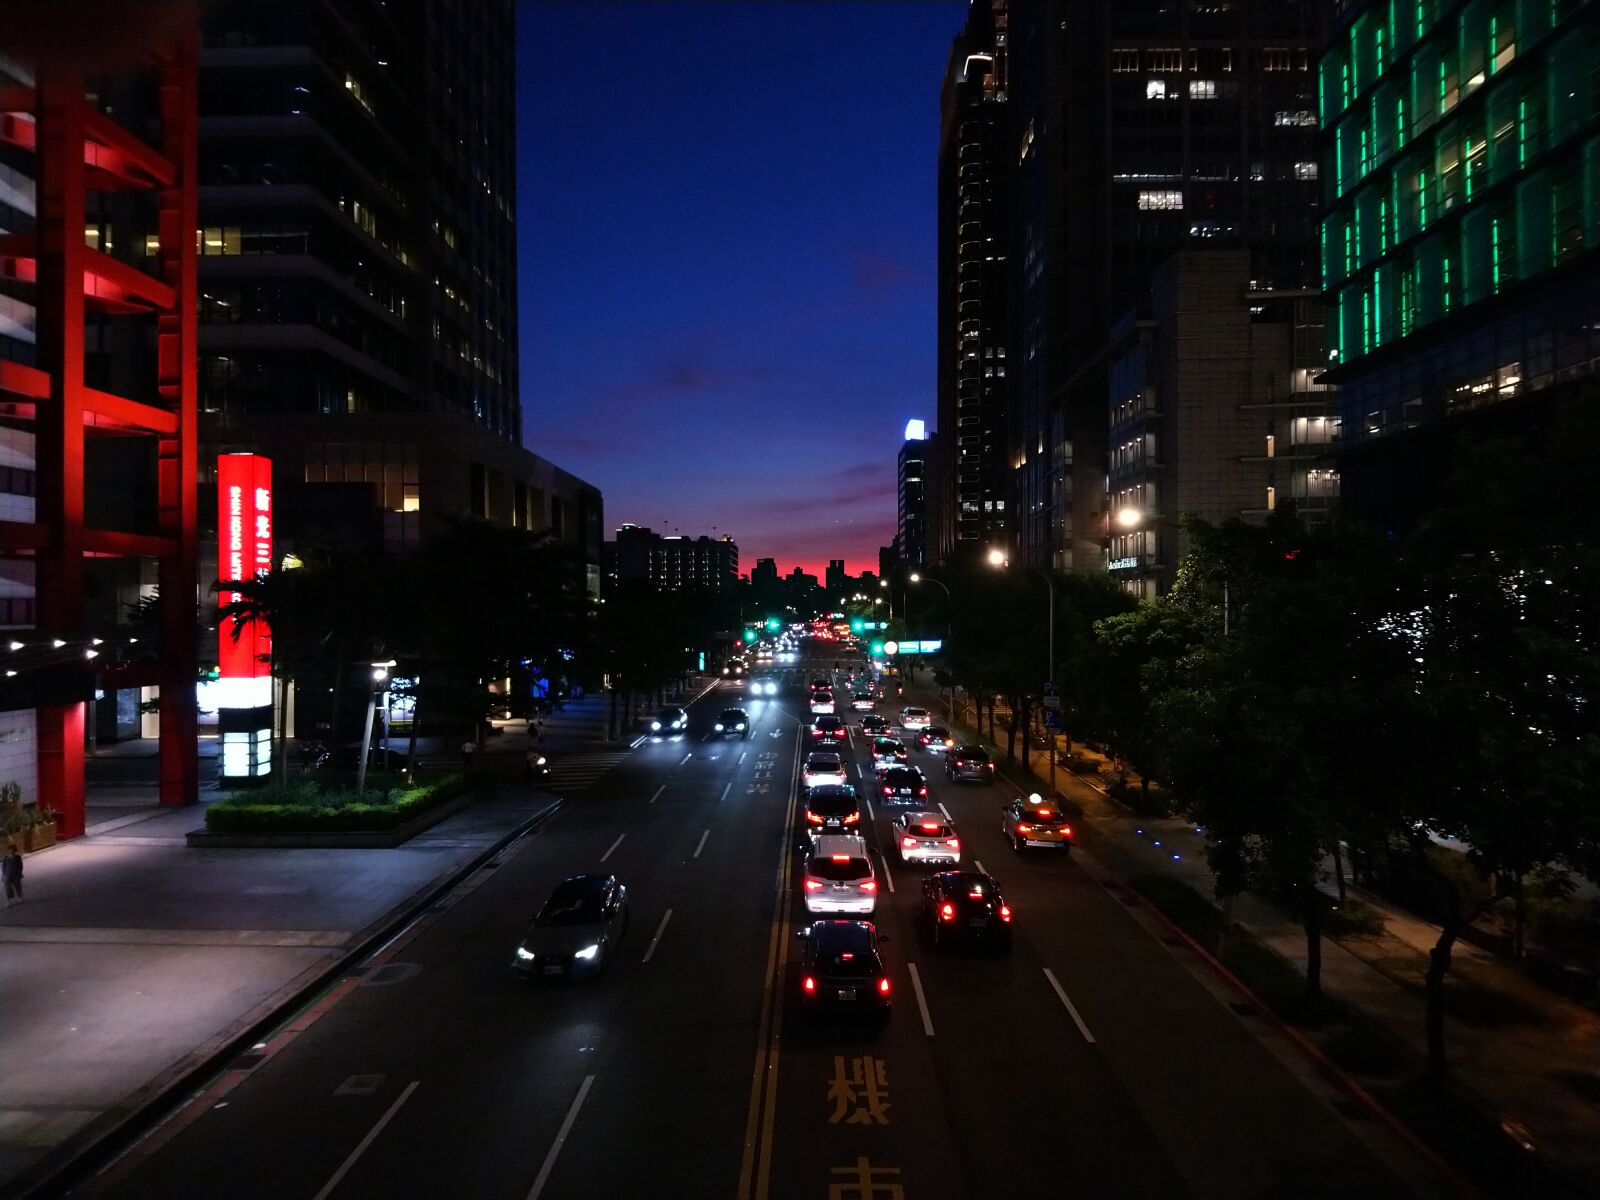 Sony Xperia XA2 sample photo. Traffic, city, urban photography